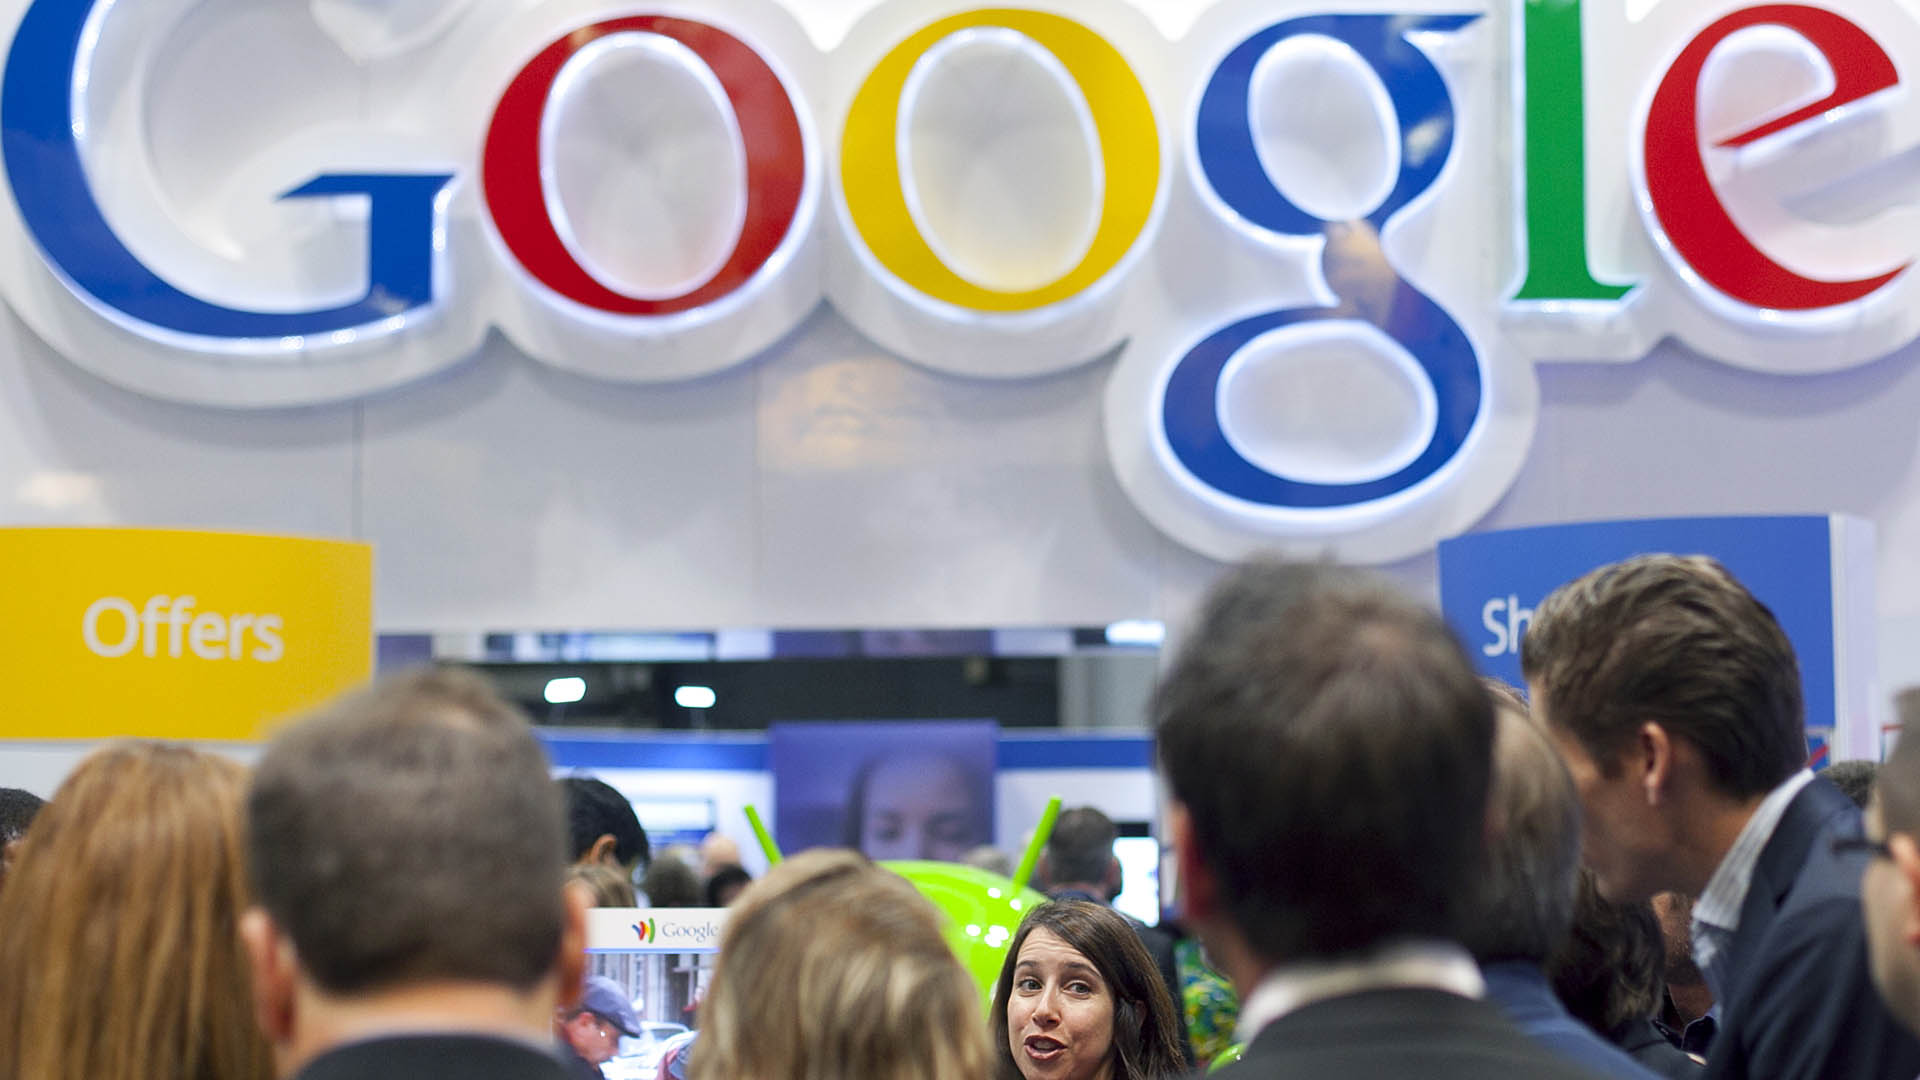 Google compra la firma de análisis Looker por 2.600 millones de dólares y refuerza su oferta en la nube